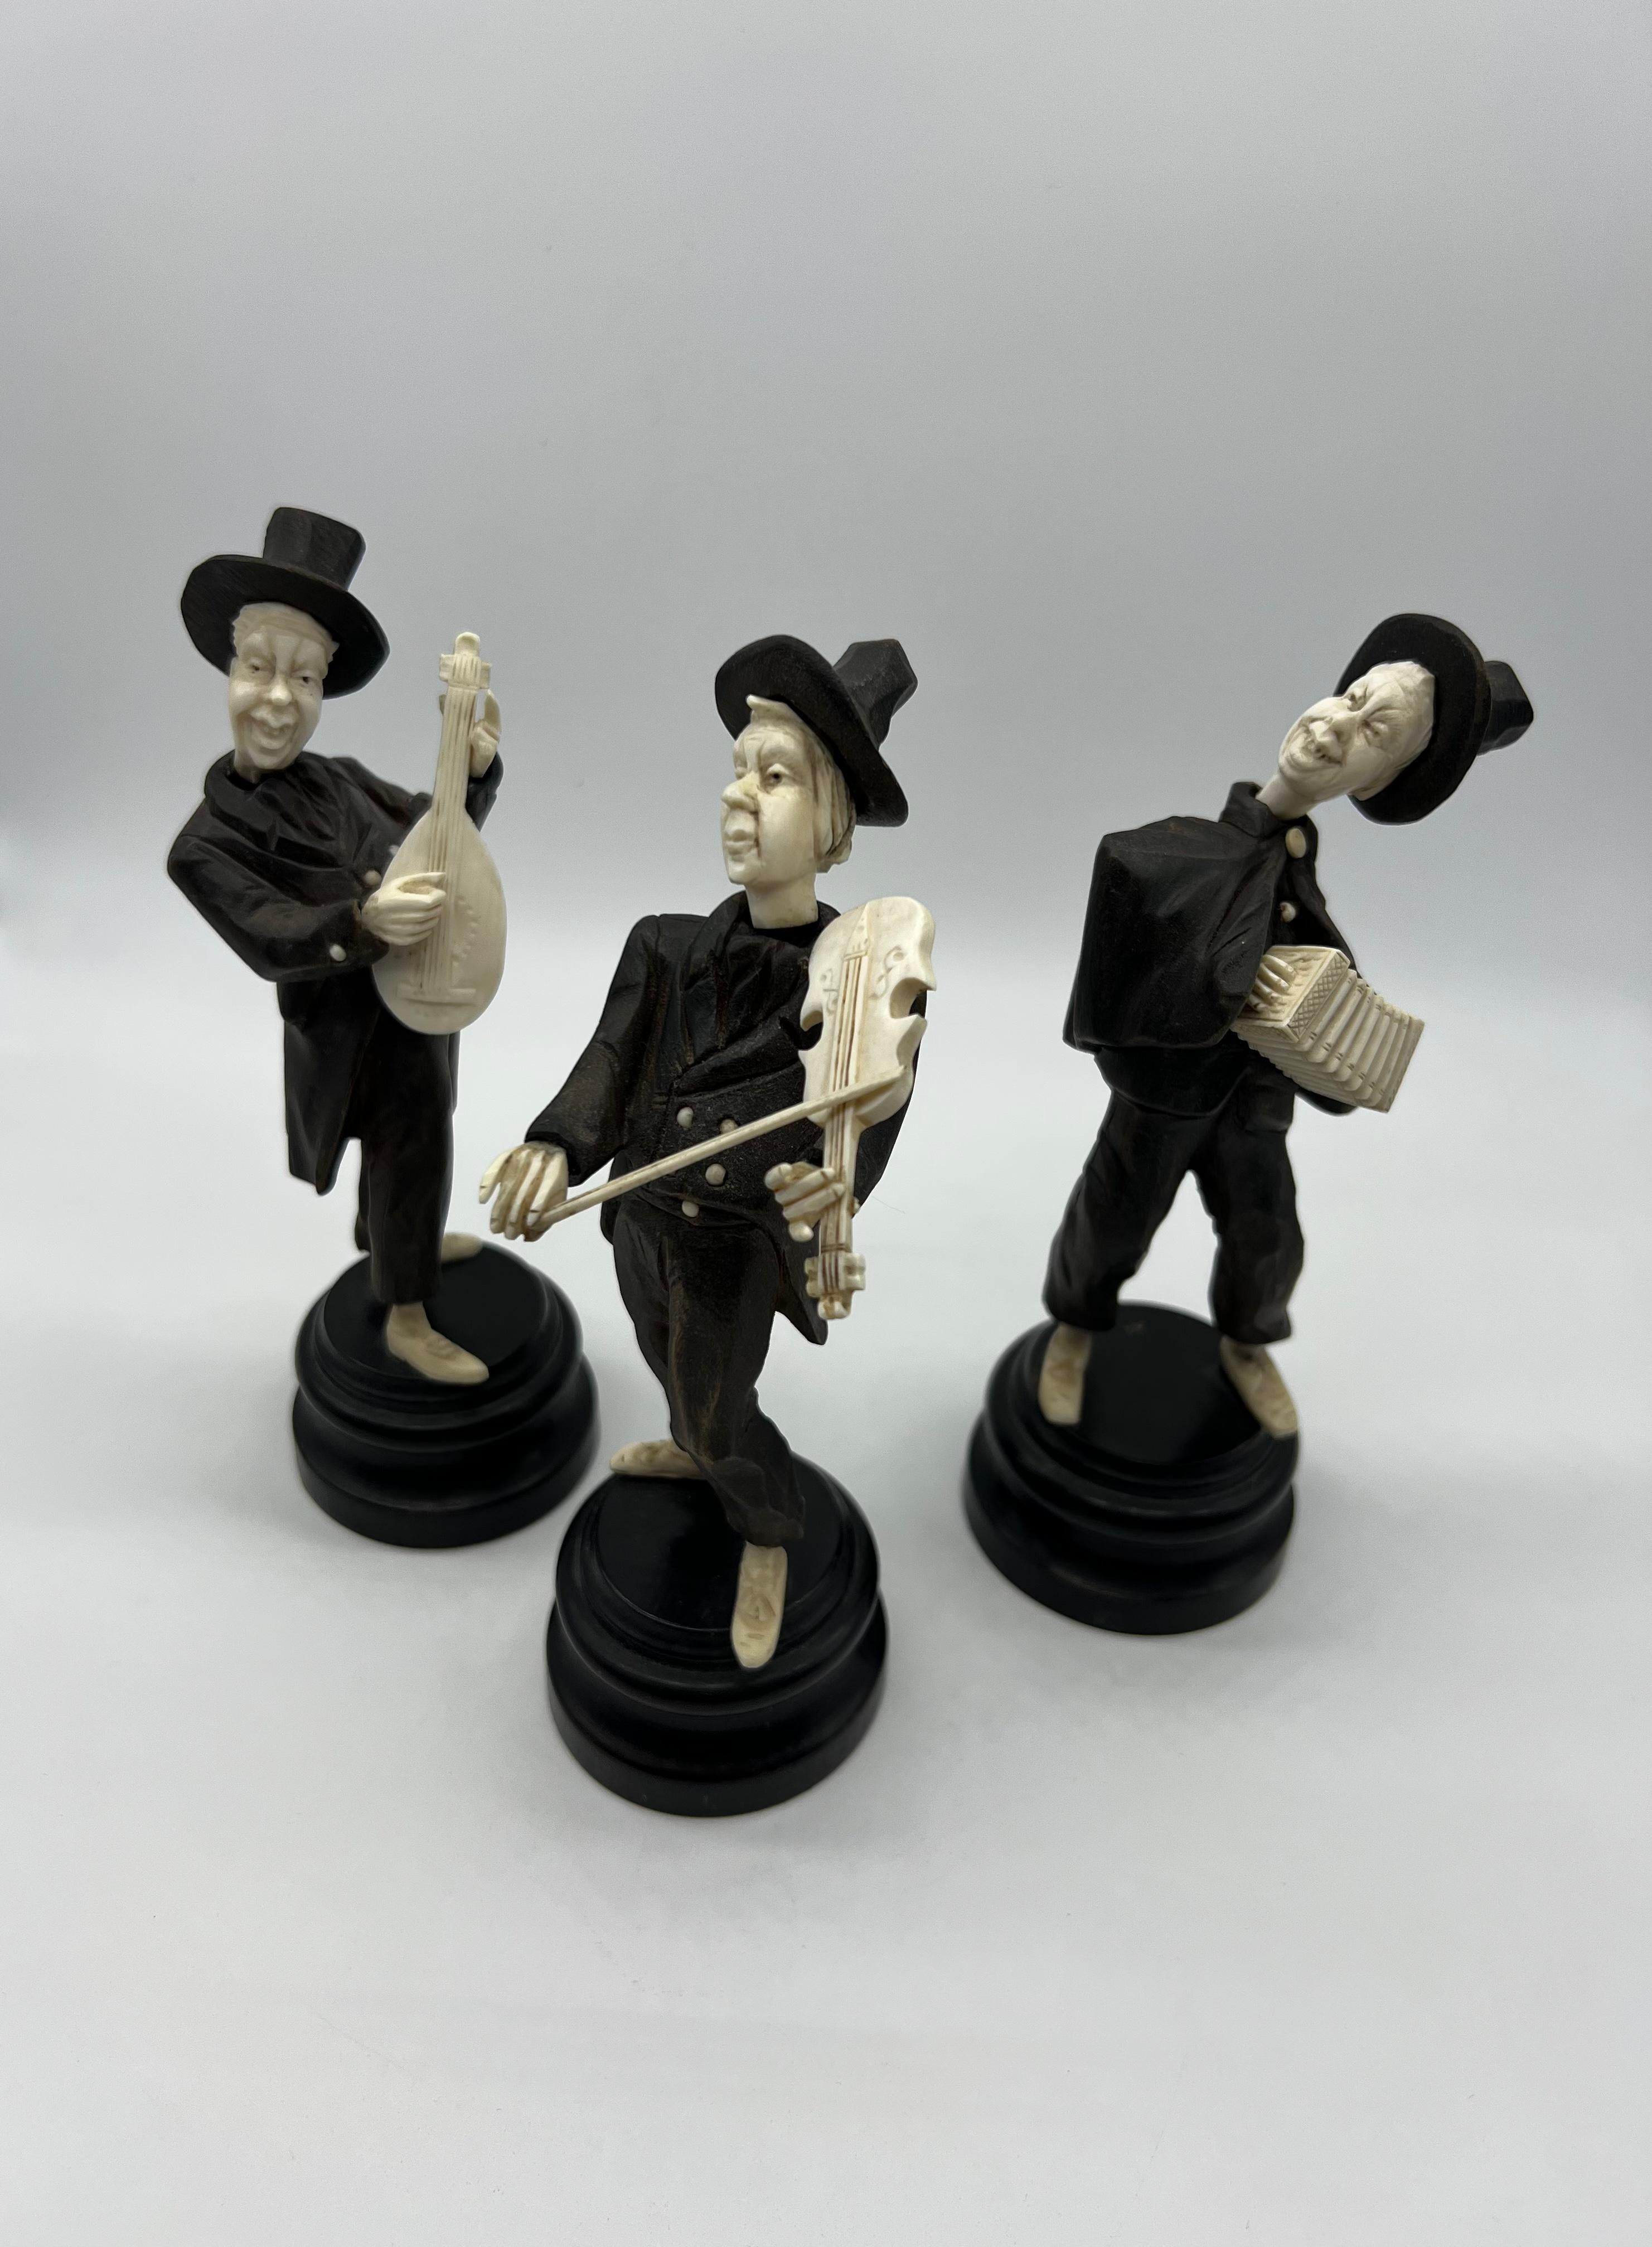 Figurines sculptées en bois et en os, sur socle en bois, hauteur env. 17 cm. vers 1900, trois figurines, bon état.